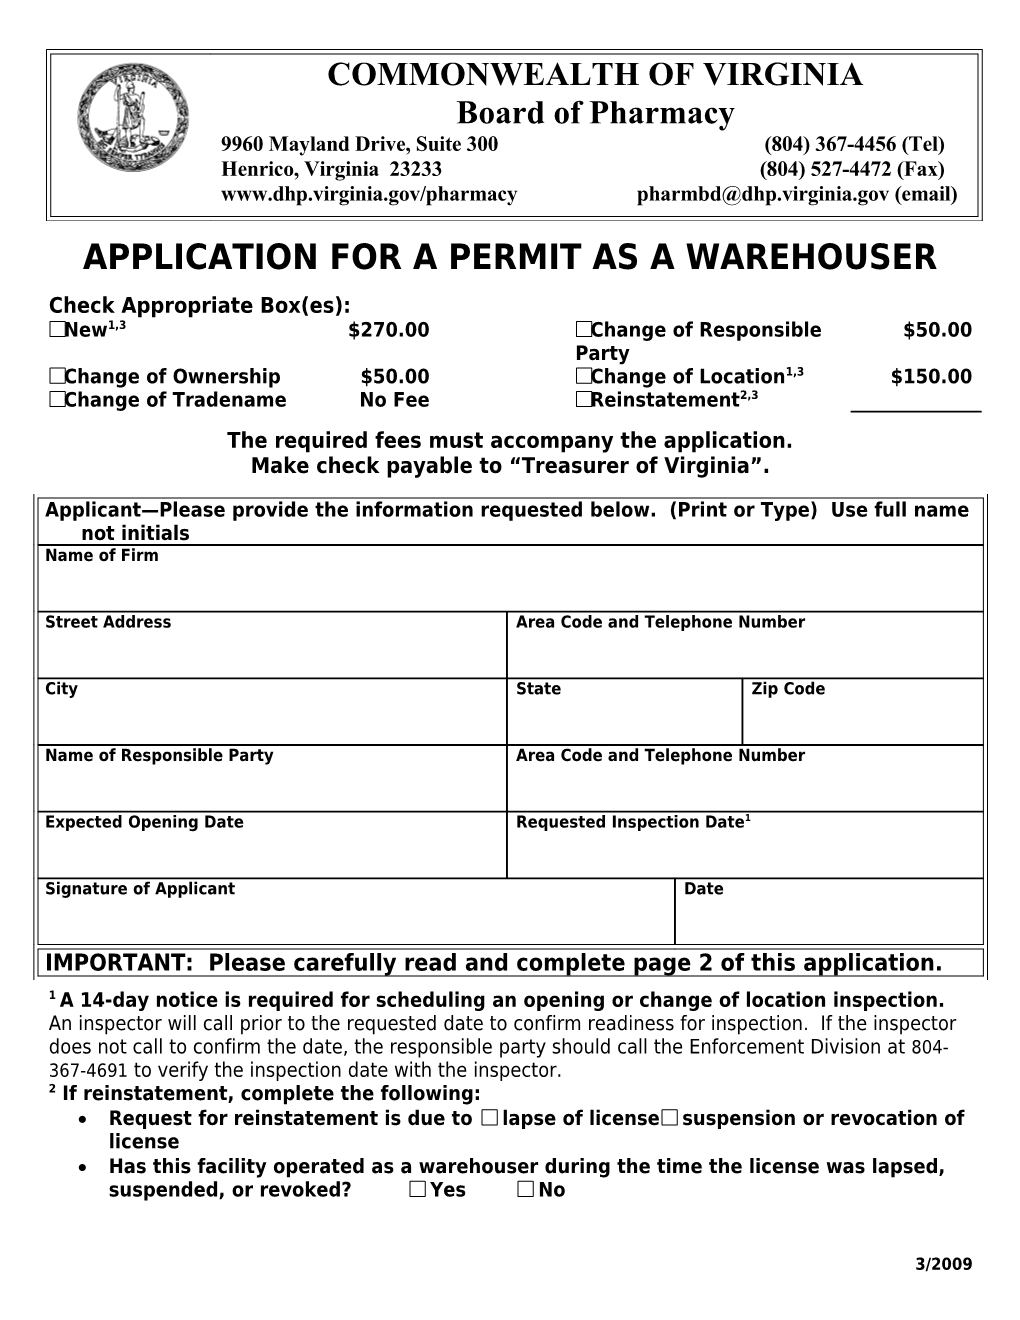 Board of Pharmacy Application for Warehouser